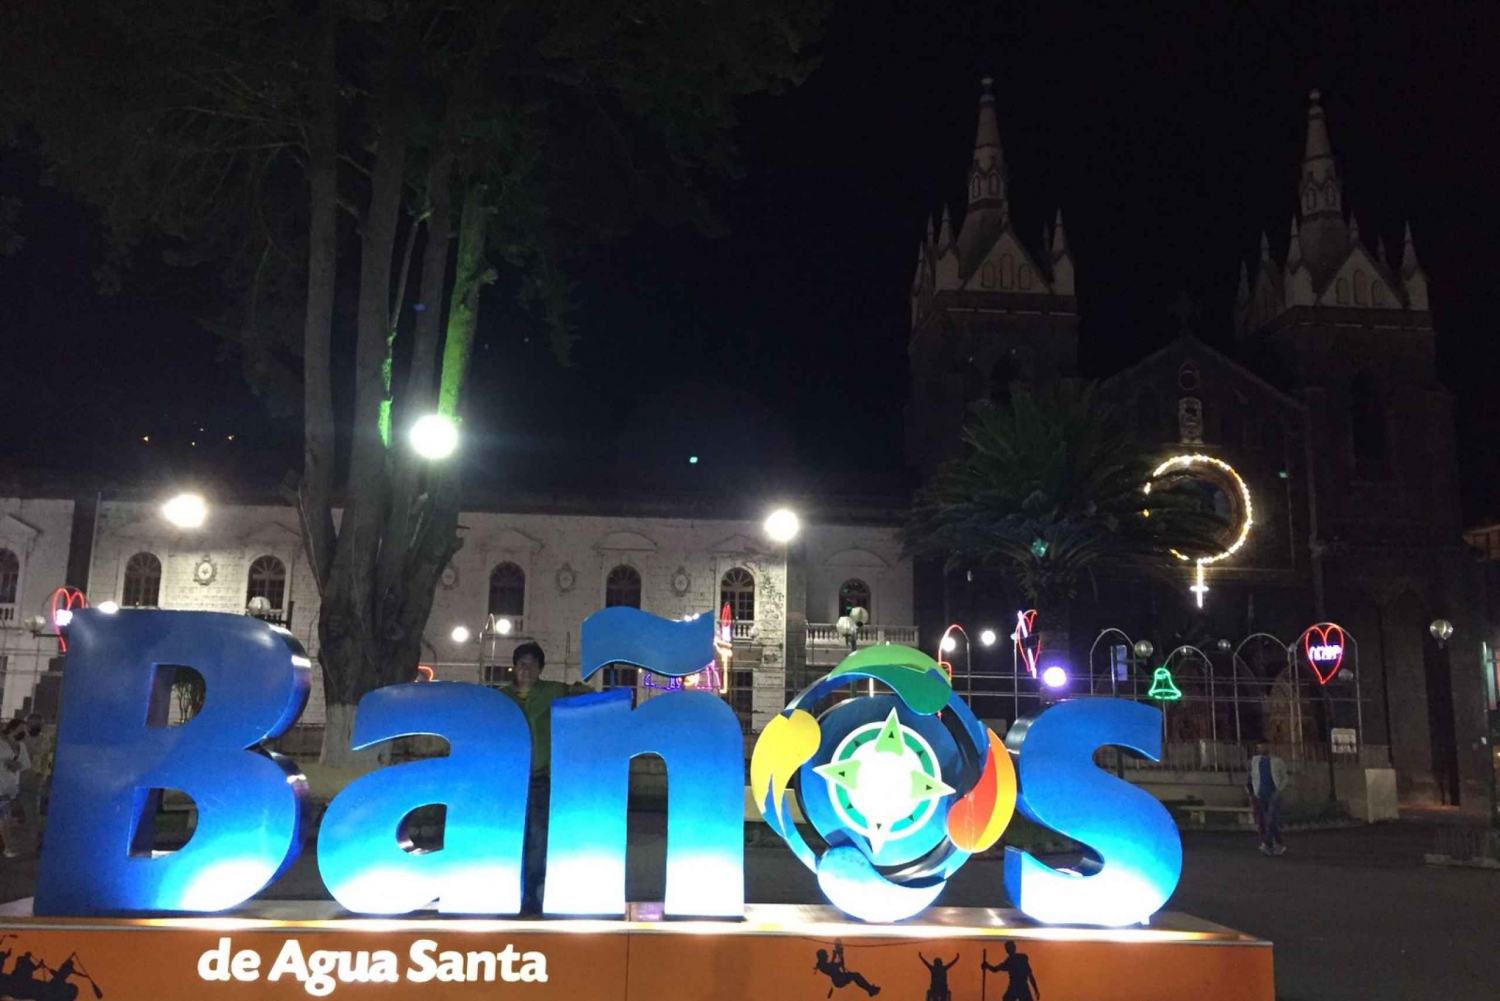 Cotopaxi &Quilotoa & Baños de Agua Santa Guided Tour